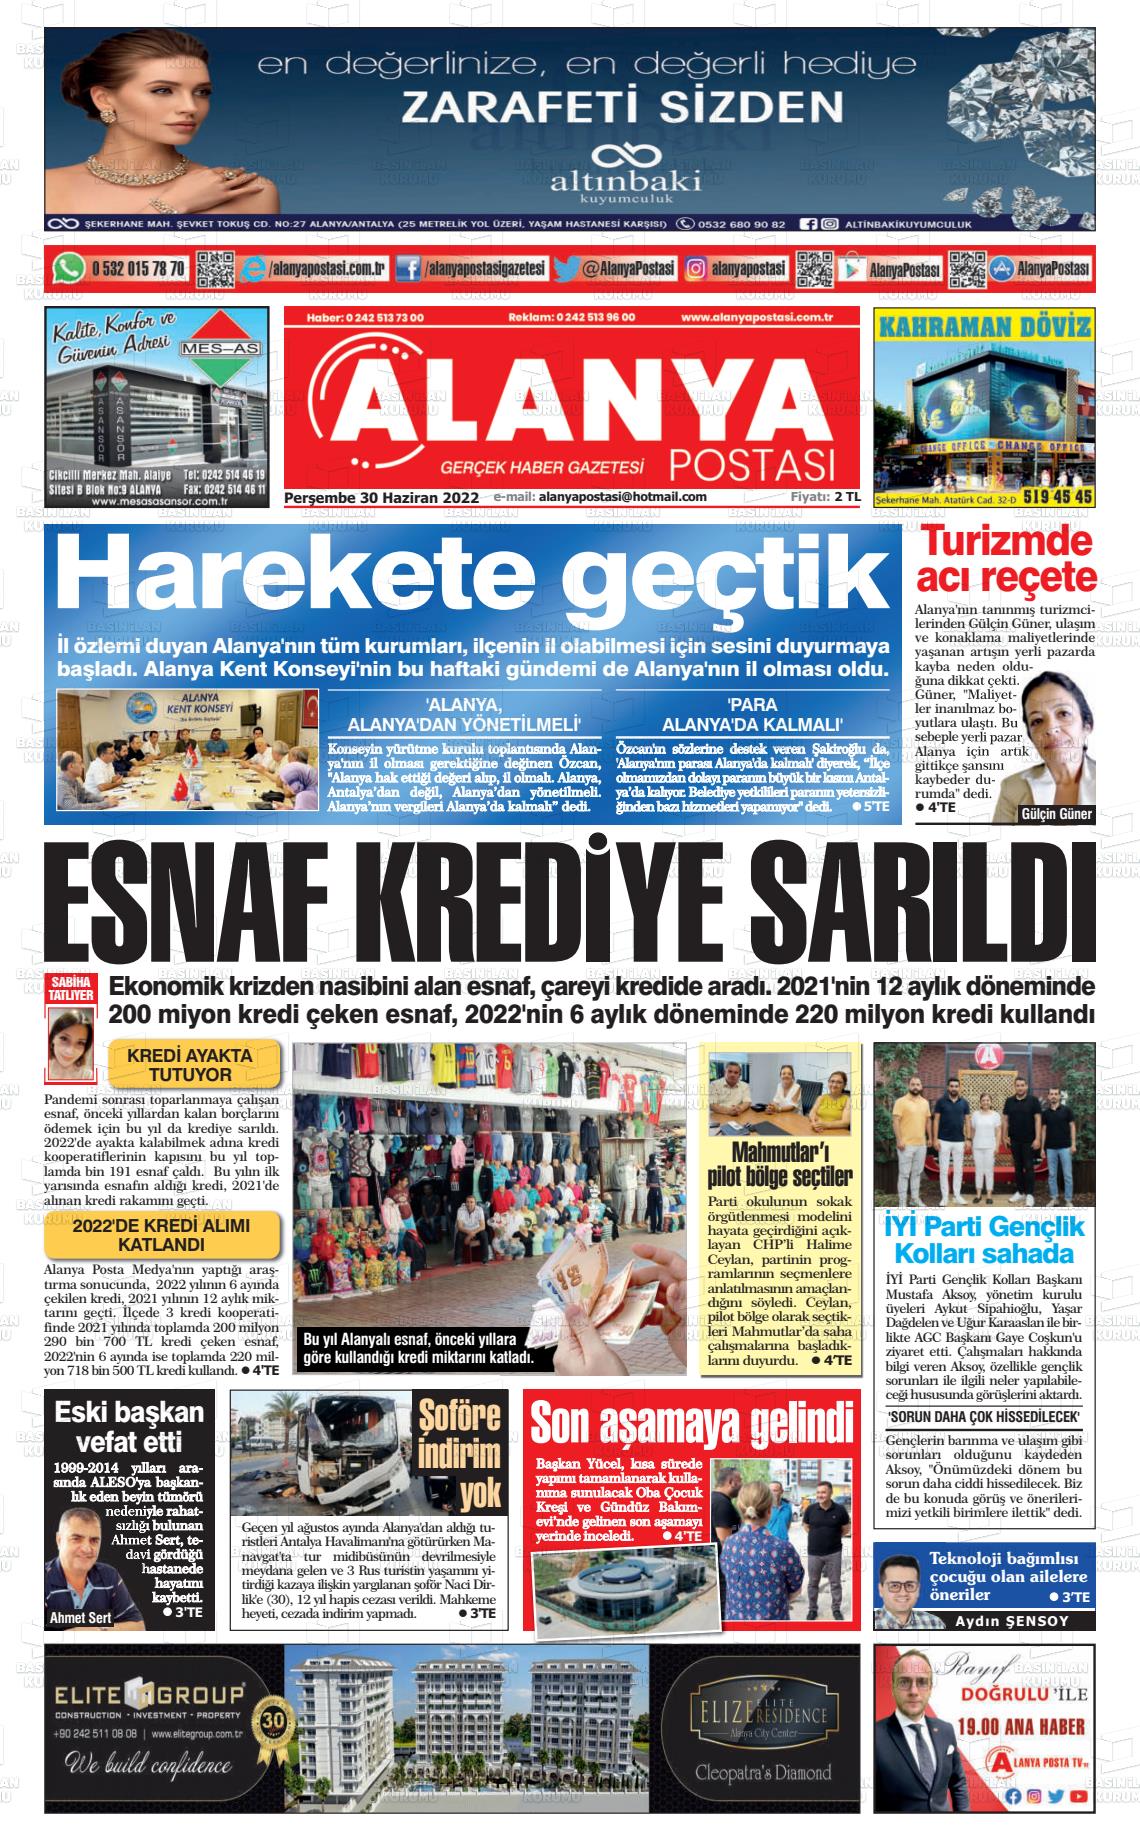 02 Temmuz 2022 Alanya Postası Gazete Manşeti